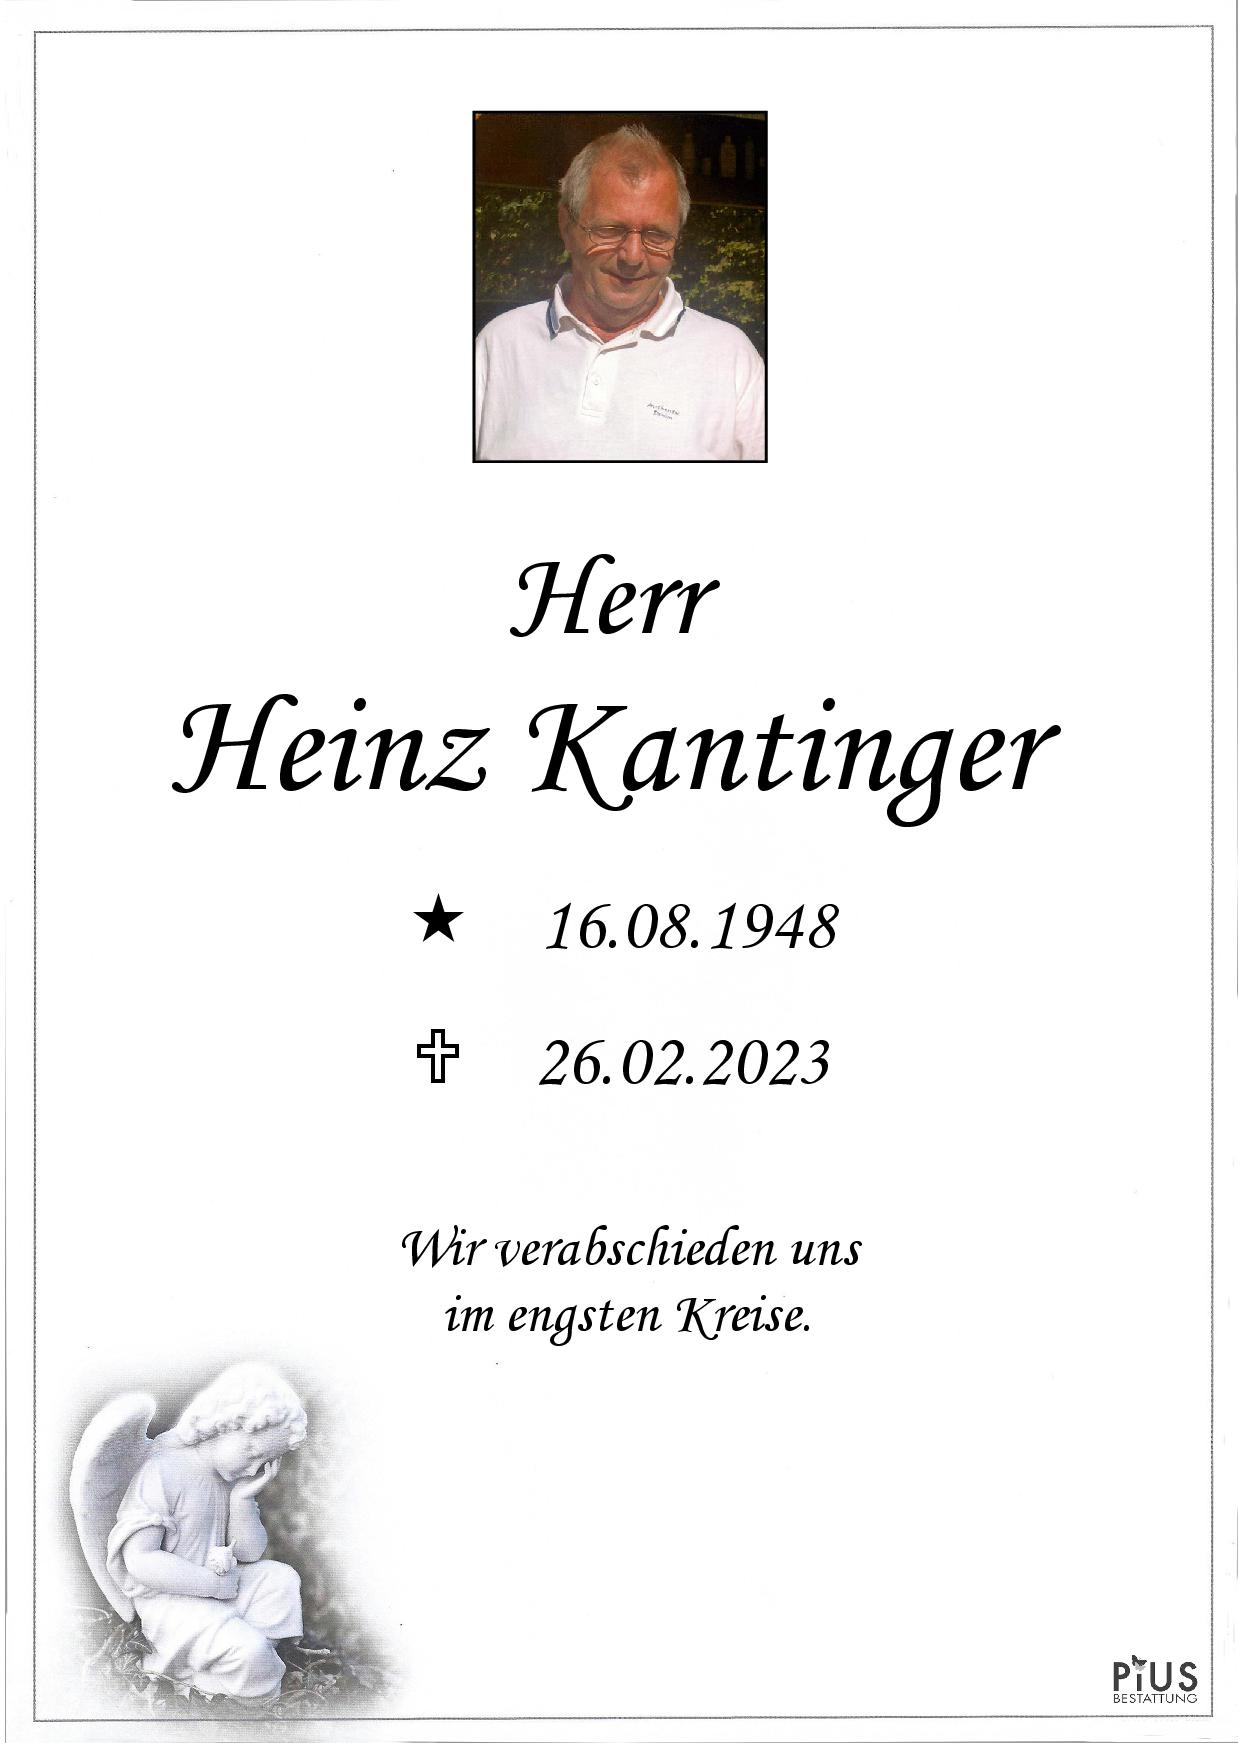 Heinz Kantinger